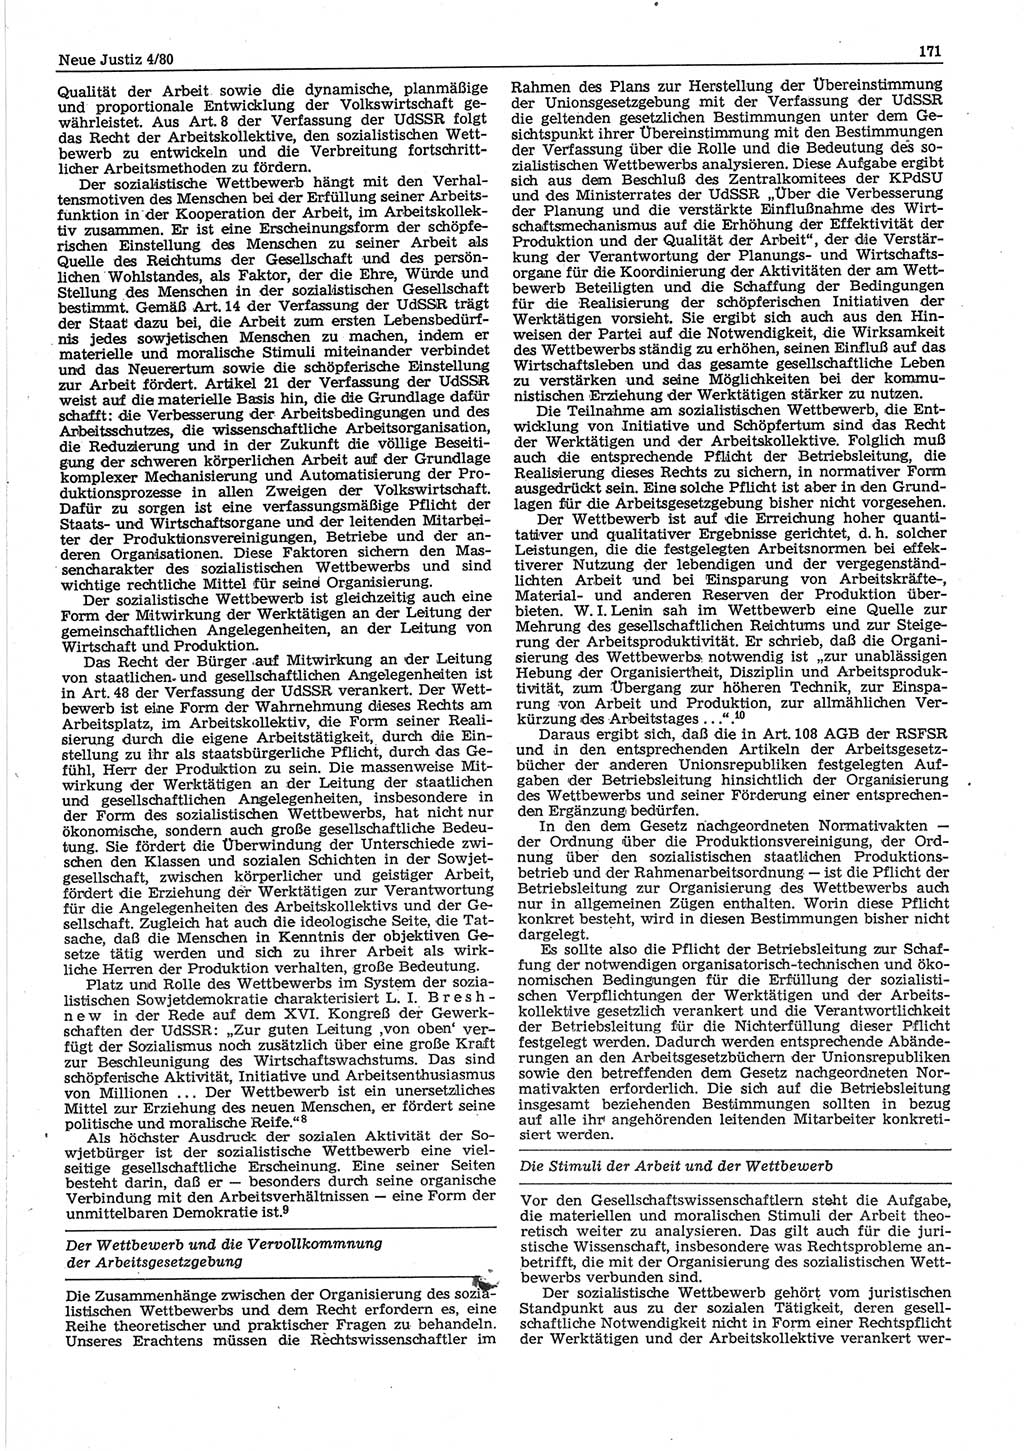 Neue Justiz (NJ), Zeitschrift für sozialistisches Recht und Gesetzlichkeit [Deutsche Demokratische Republik (DDR)], 34. Jahrgang 1980, Seite 171 (NJ DDR 1980, S. 171)